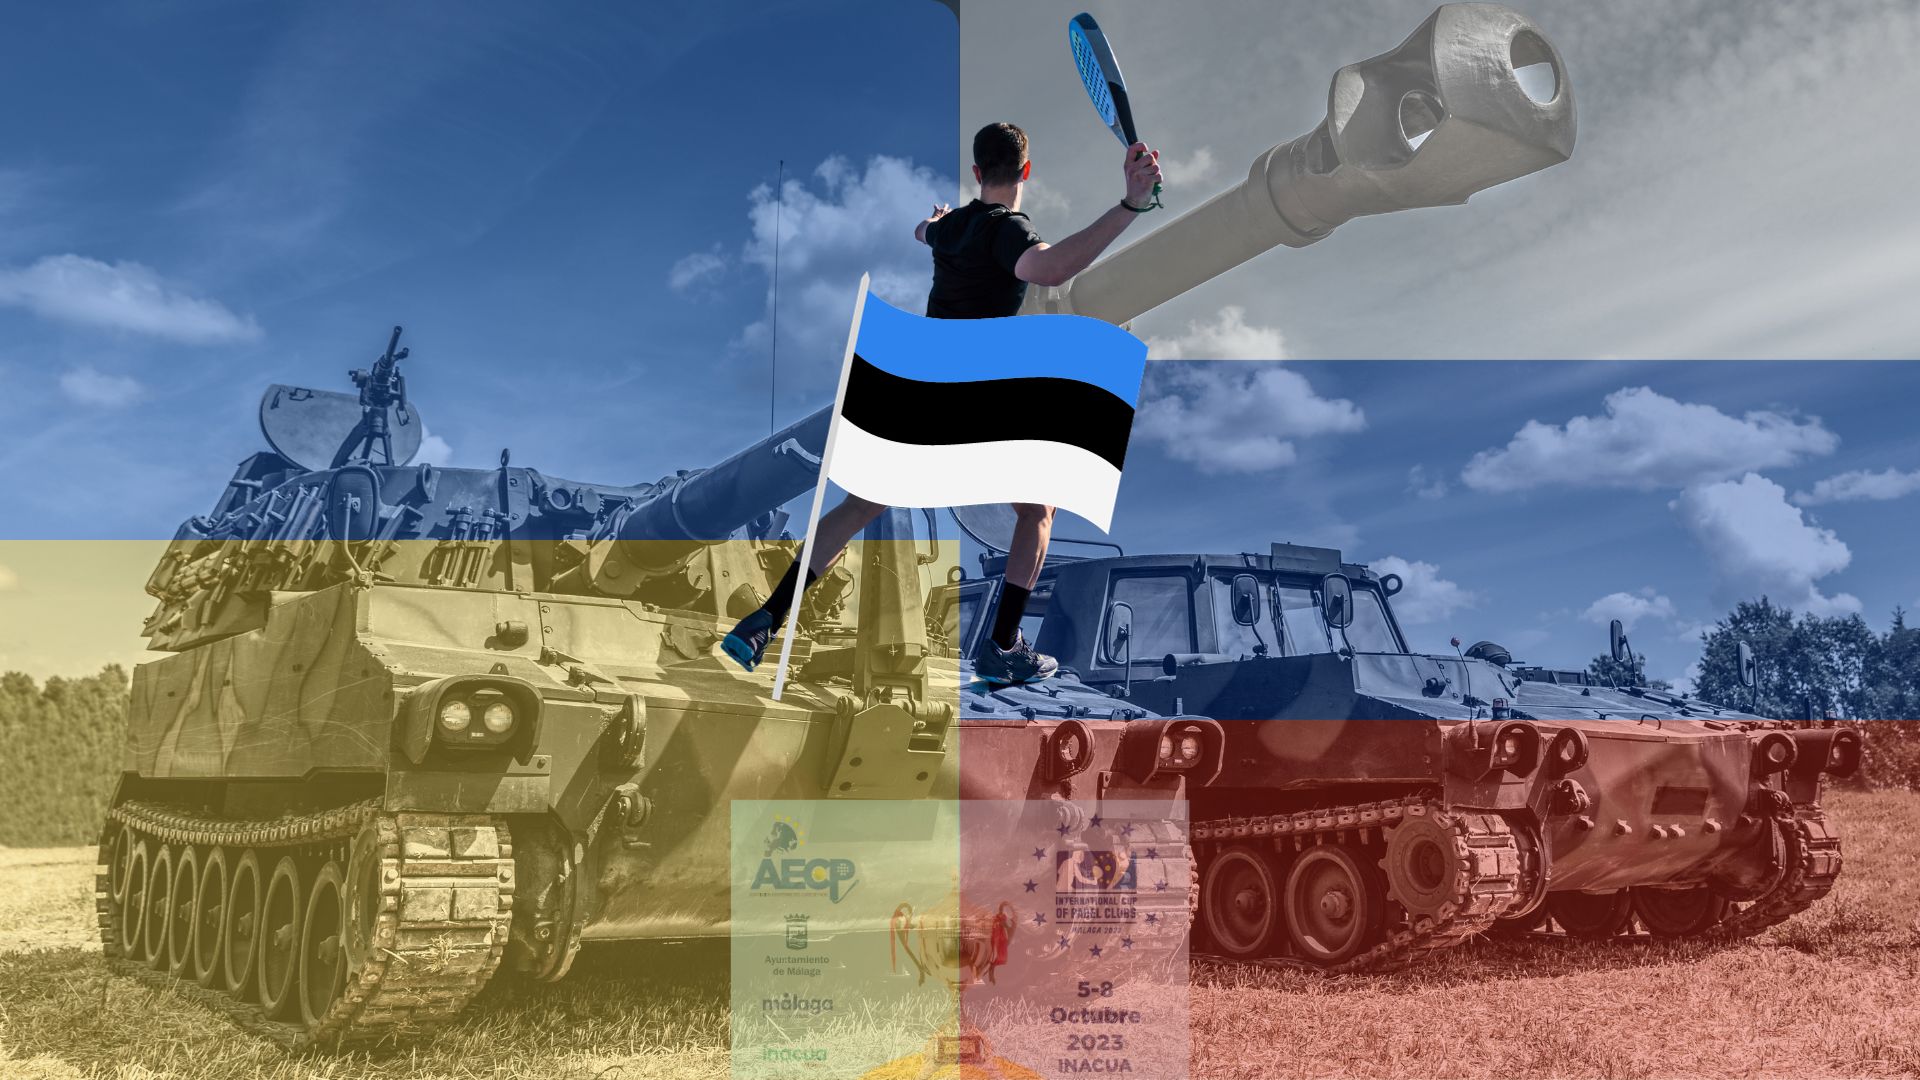 Estonia padel guerre